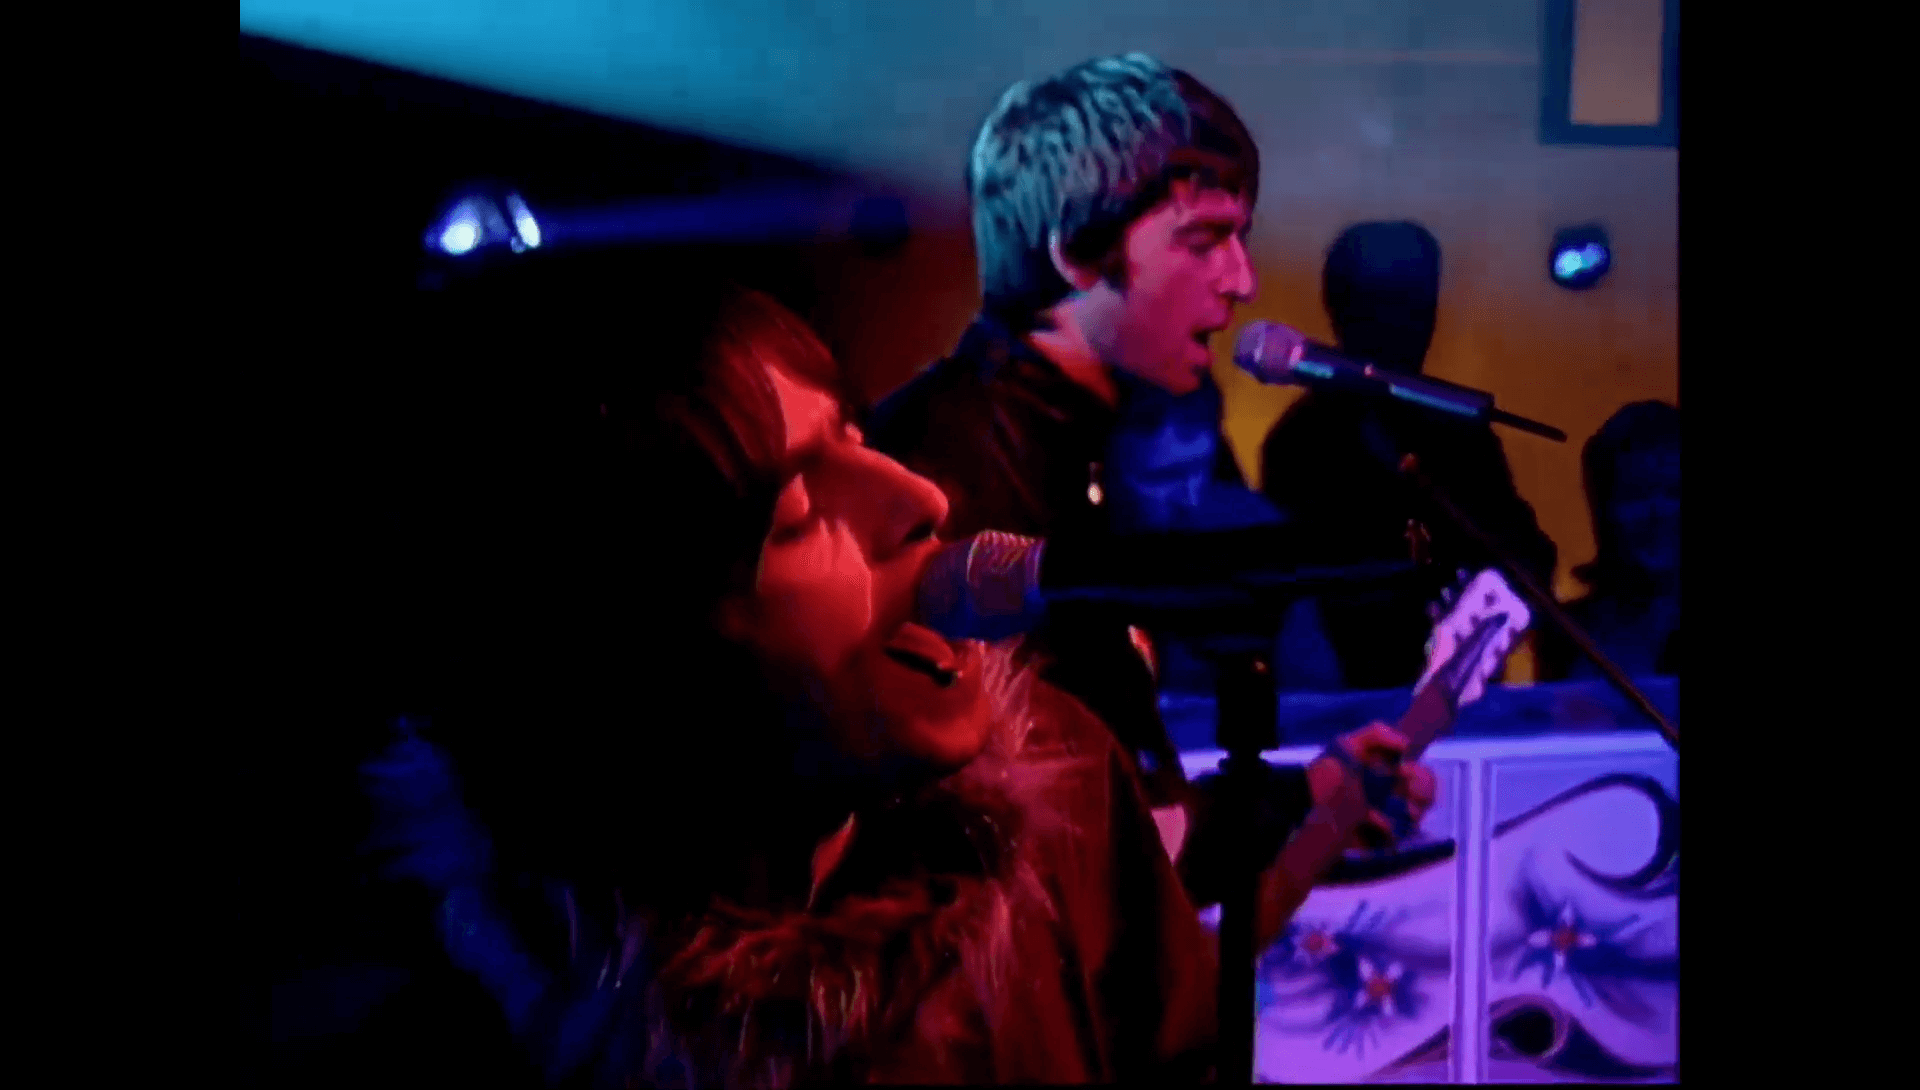 Oasis at Elstree Studios, London - April 21, 2000